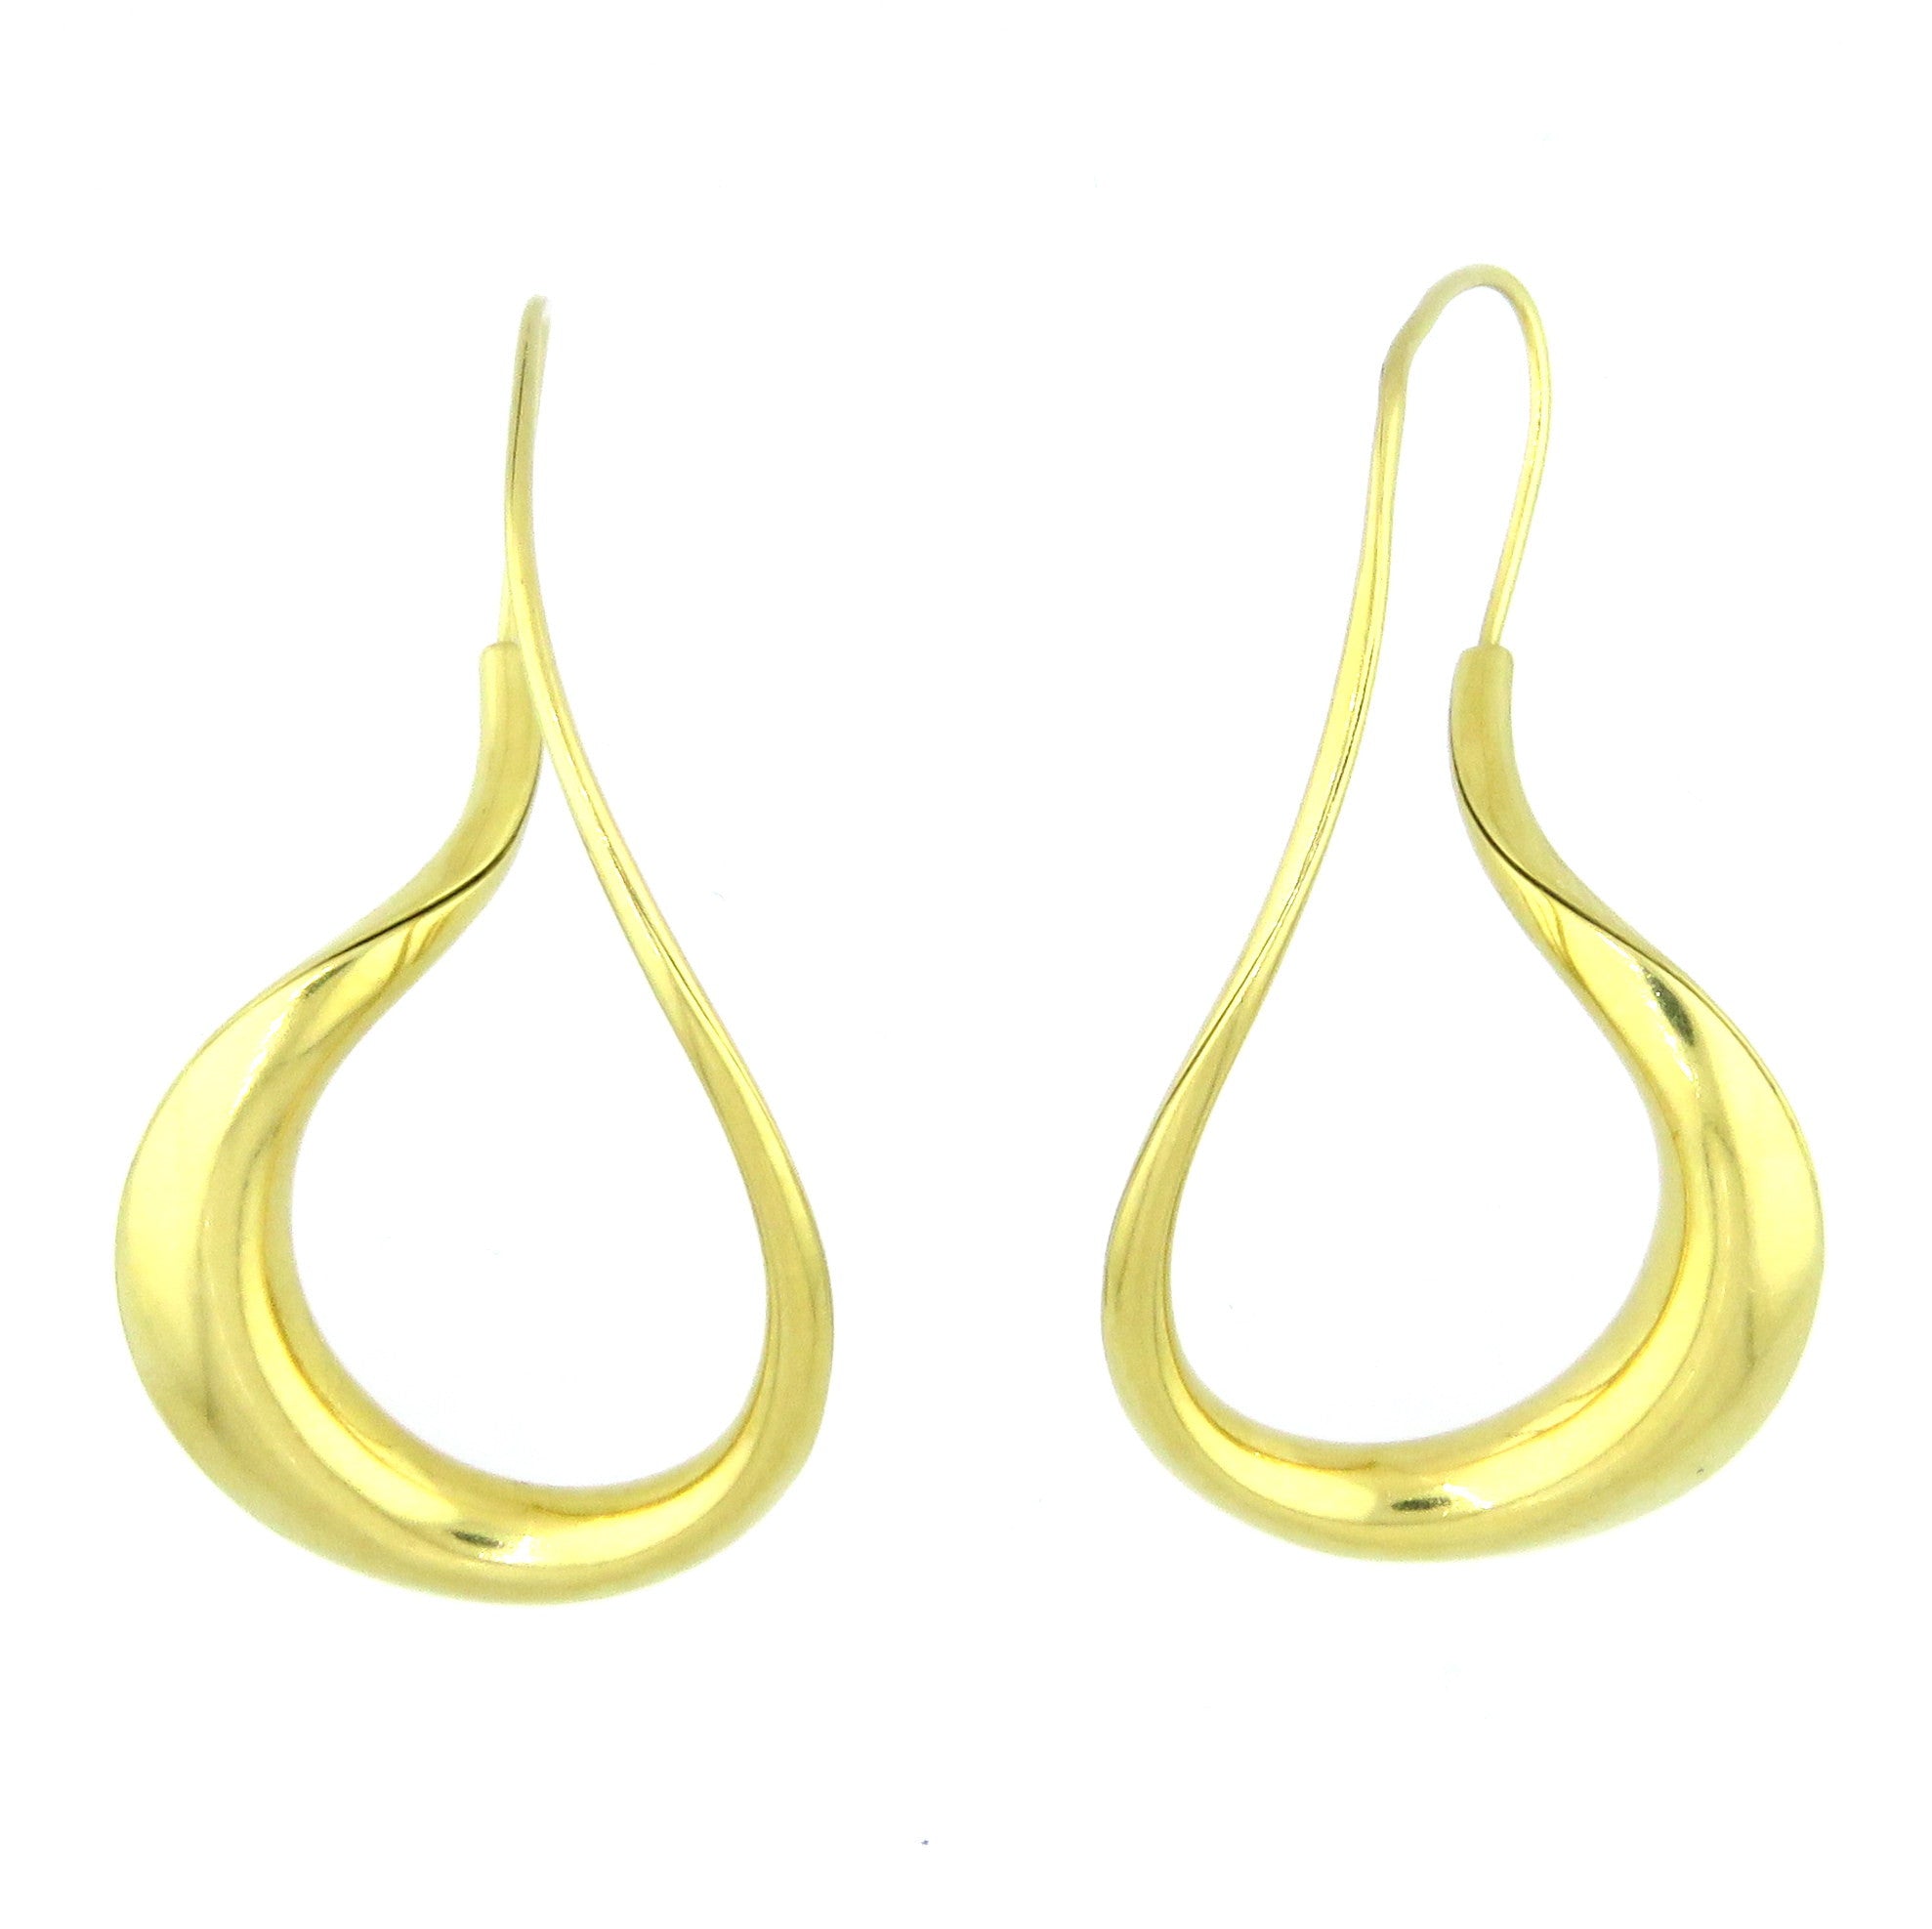 Michael Good Gold Swirl Earrings